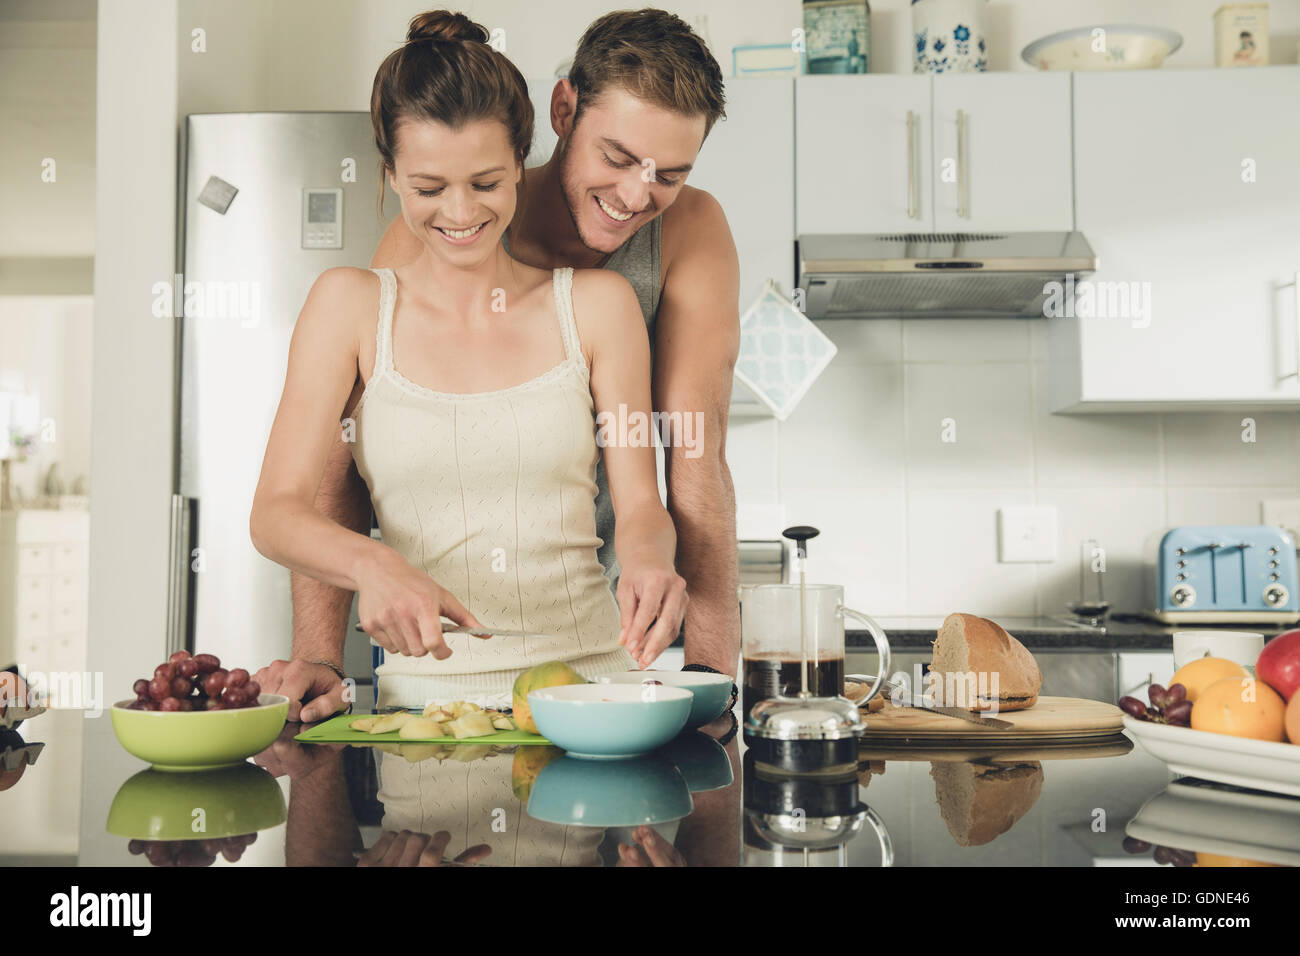 Romantico giovane uomo guarda la ragazza mentre prepara la colazione in cucina Foto Stock